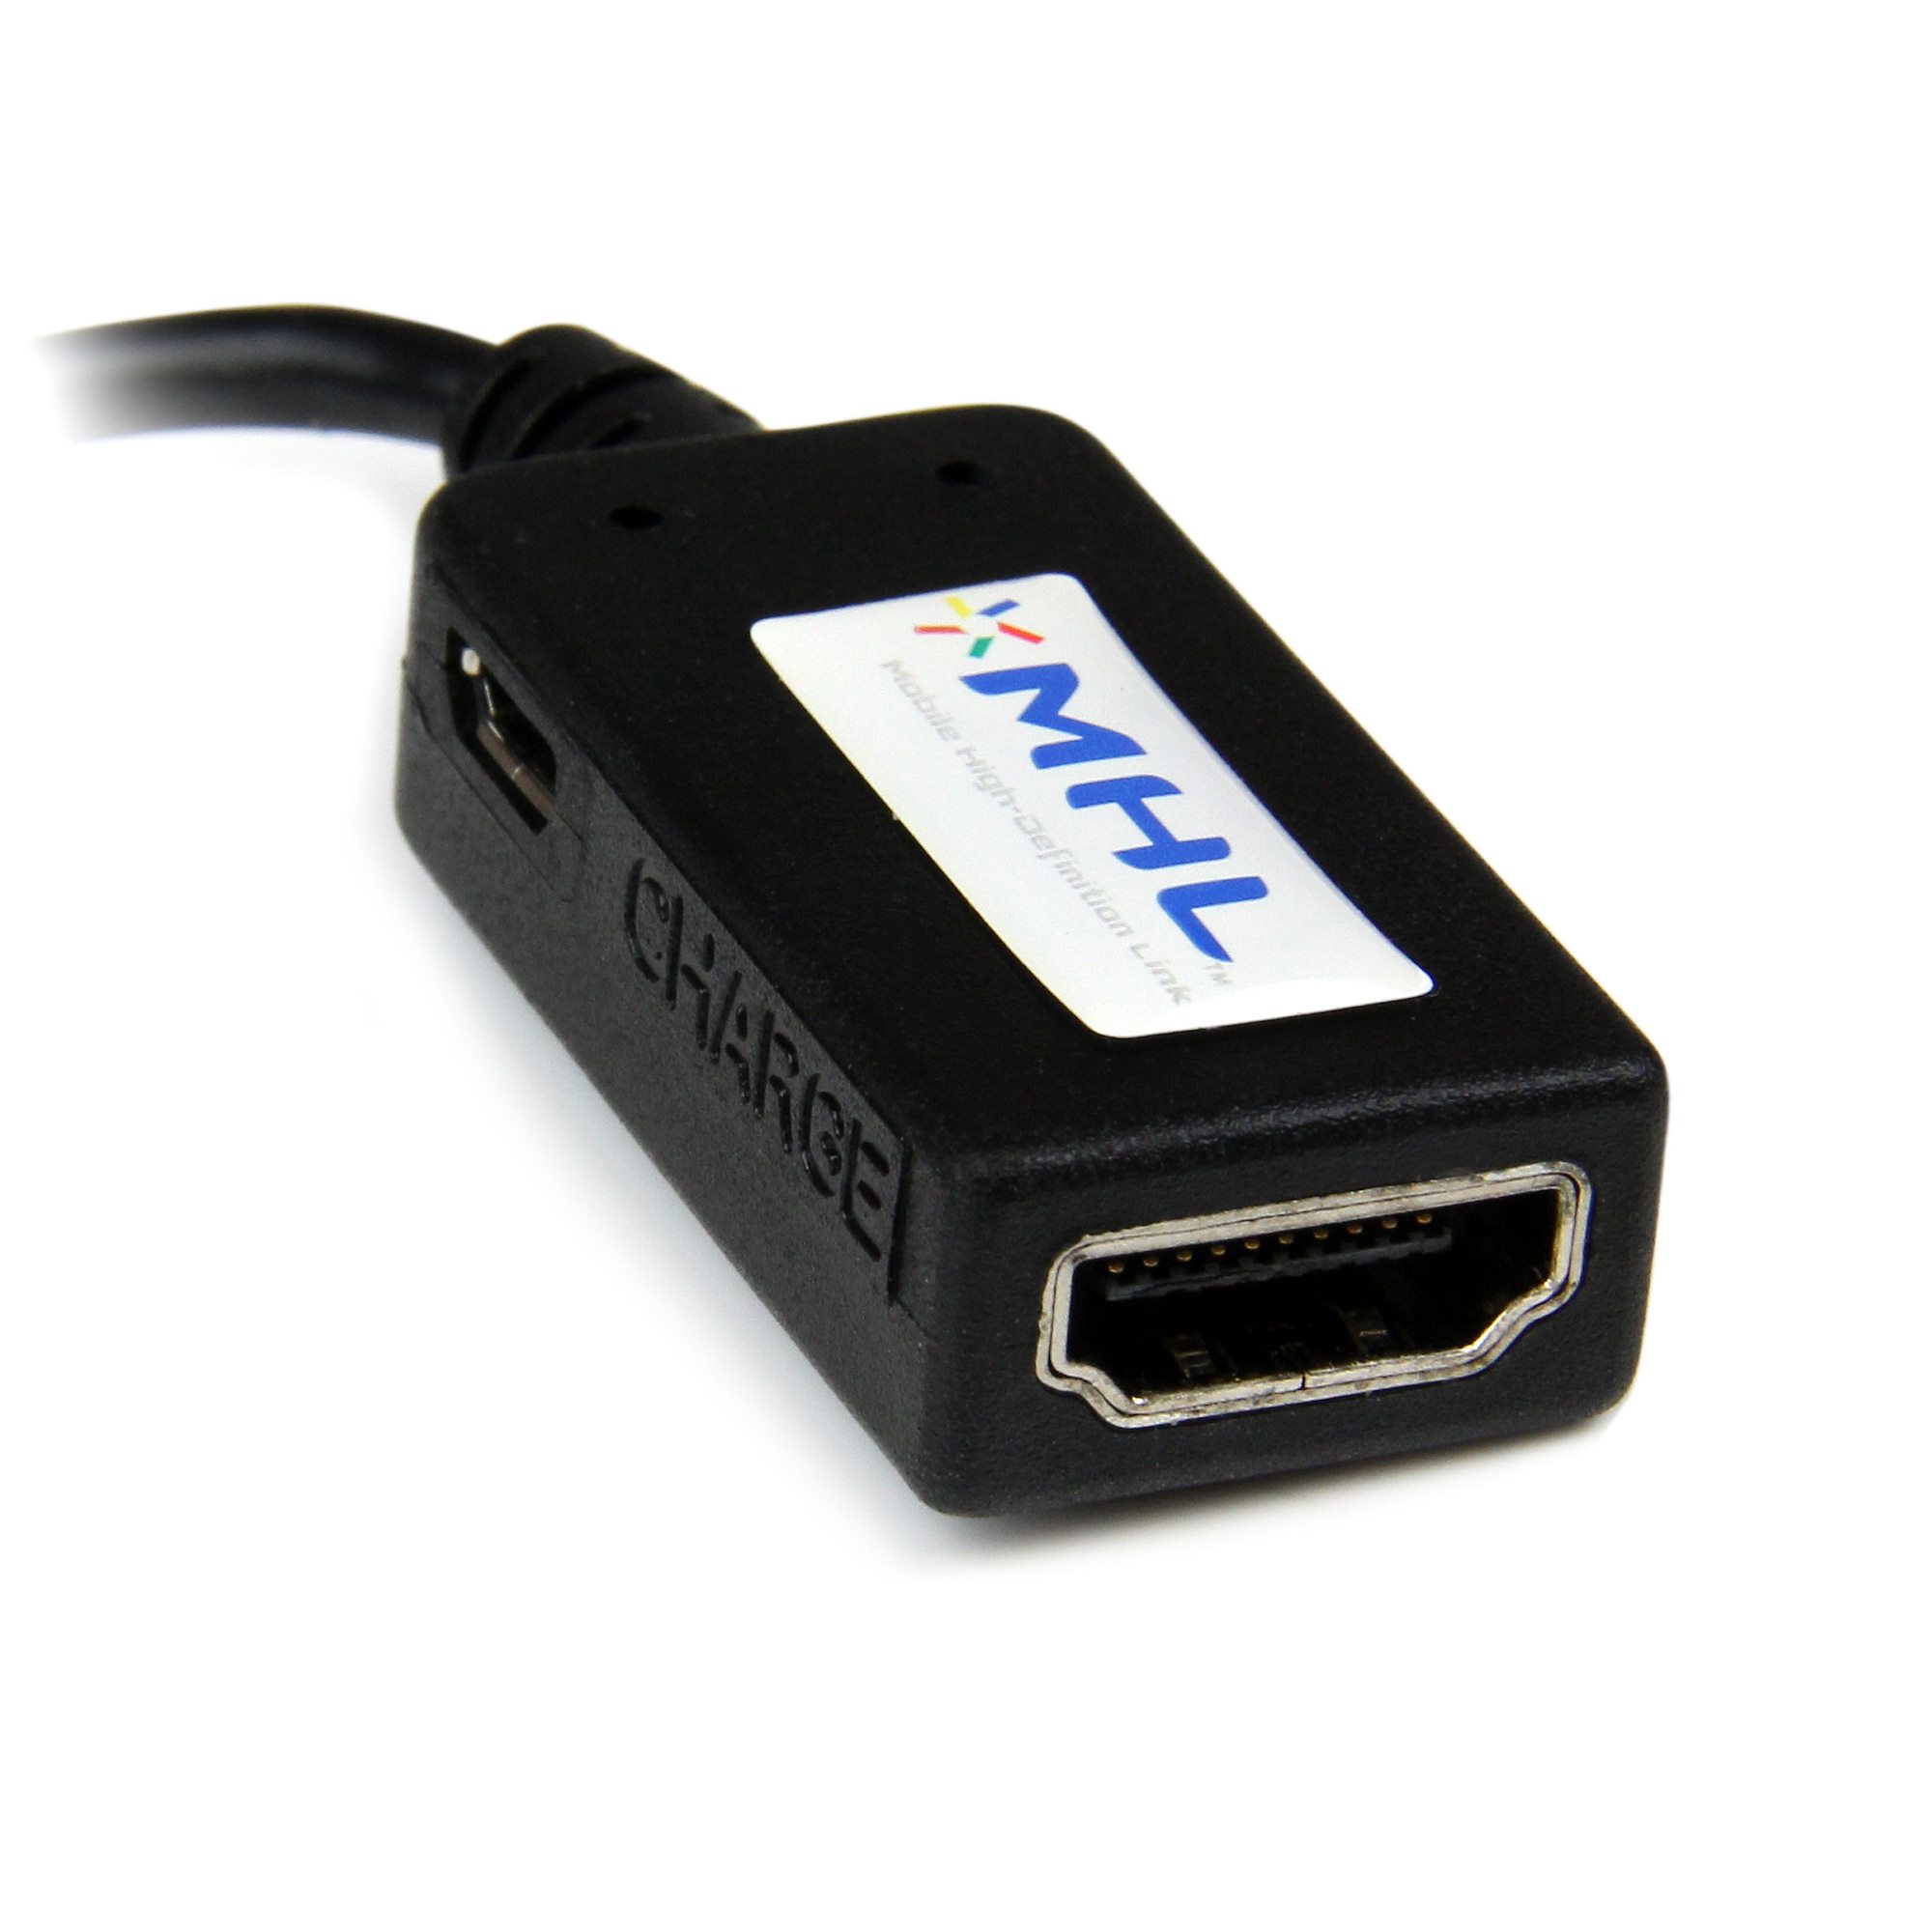 Mhl Adaptador De Cable Micro Usb A Hdmi Conversor De Vídeo